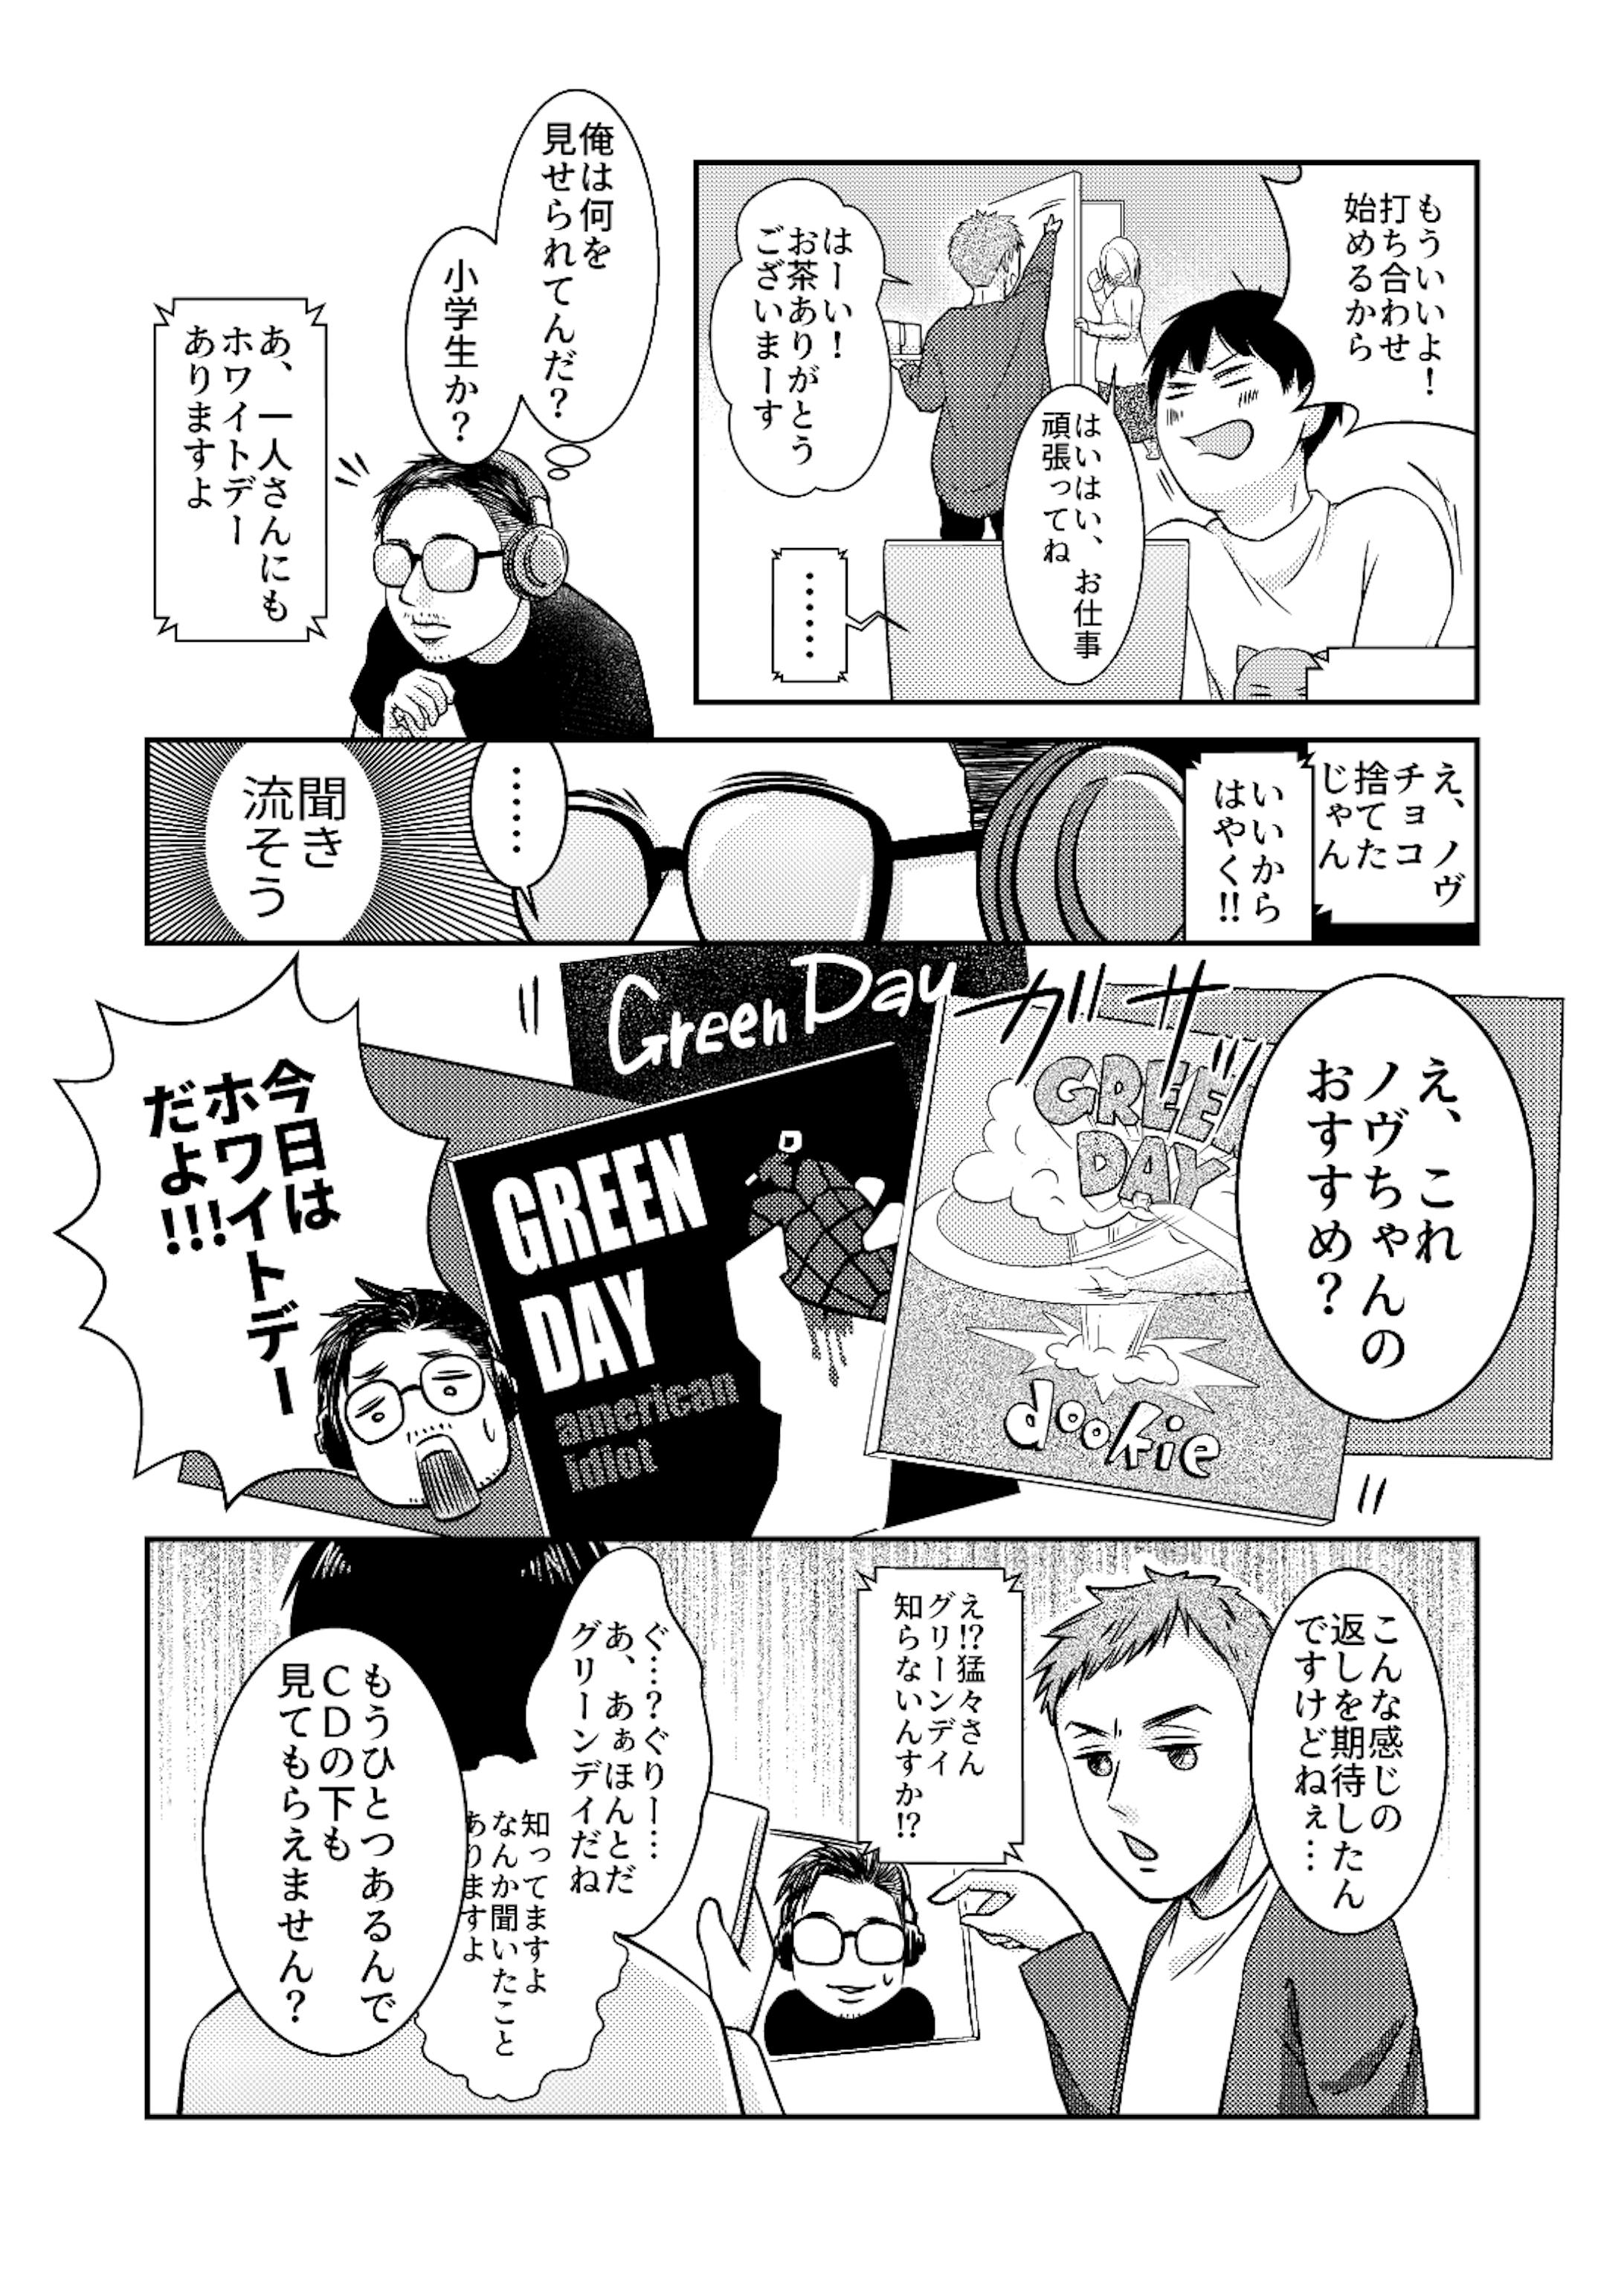 ナナフシギさんのファンアート漫画02-3